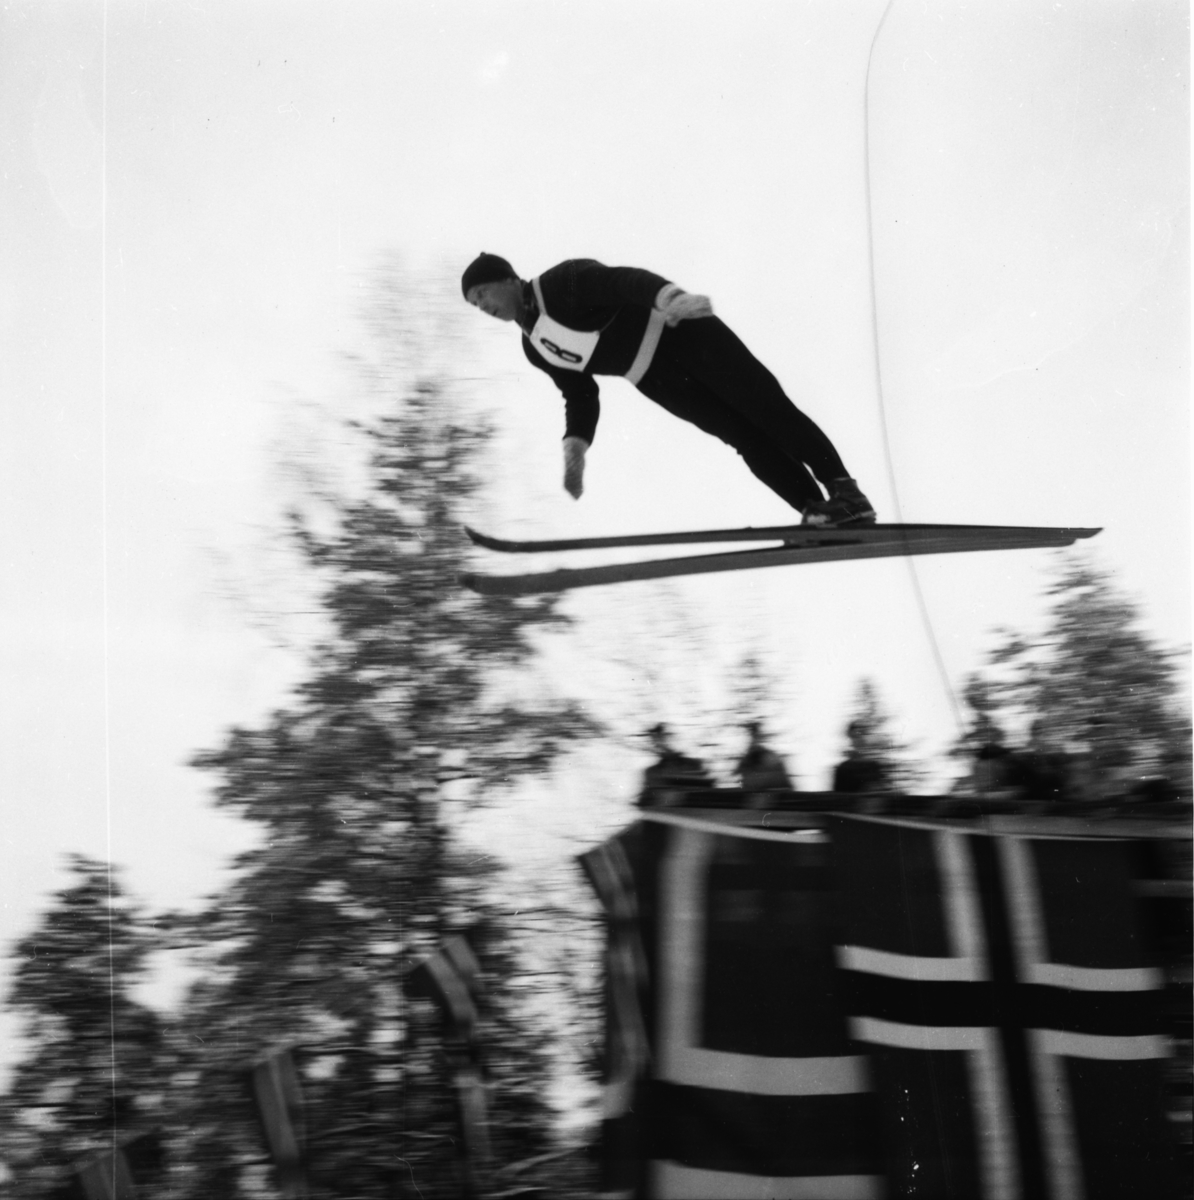 Vardens arkiv. "Skotfoss Turn & I arr. seniormesterskap i Hasselbakken"  21.03.1954